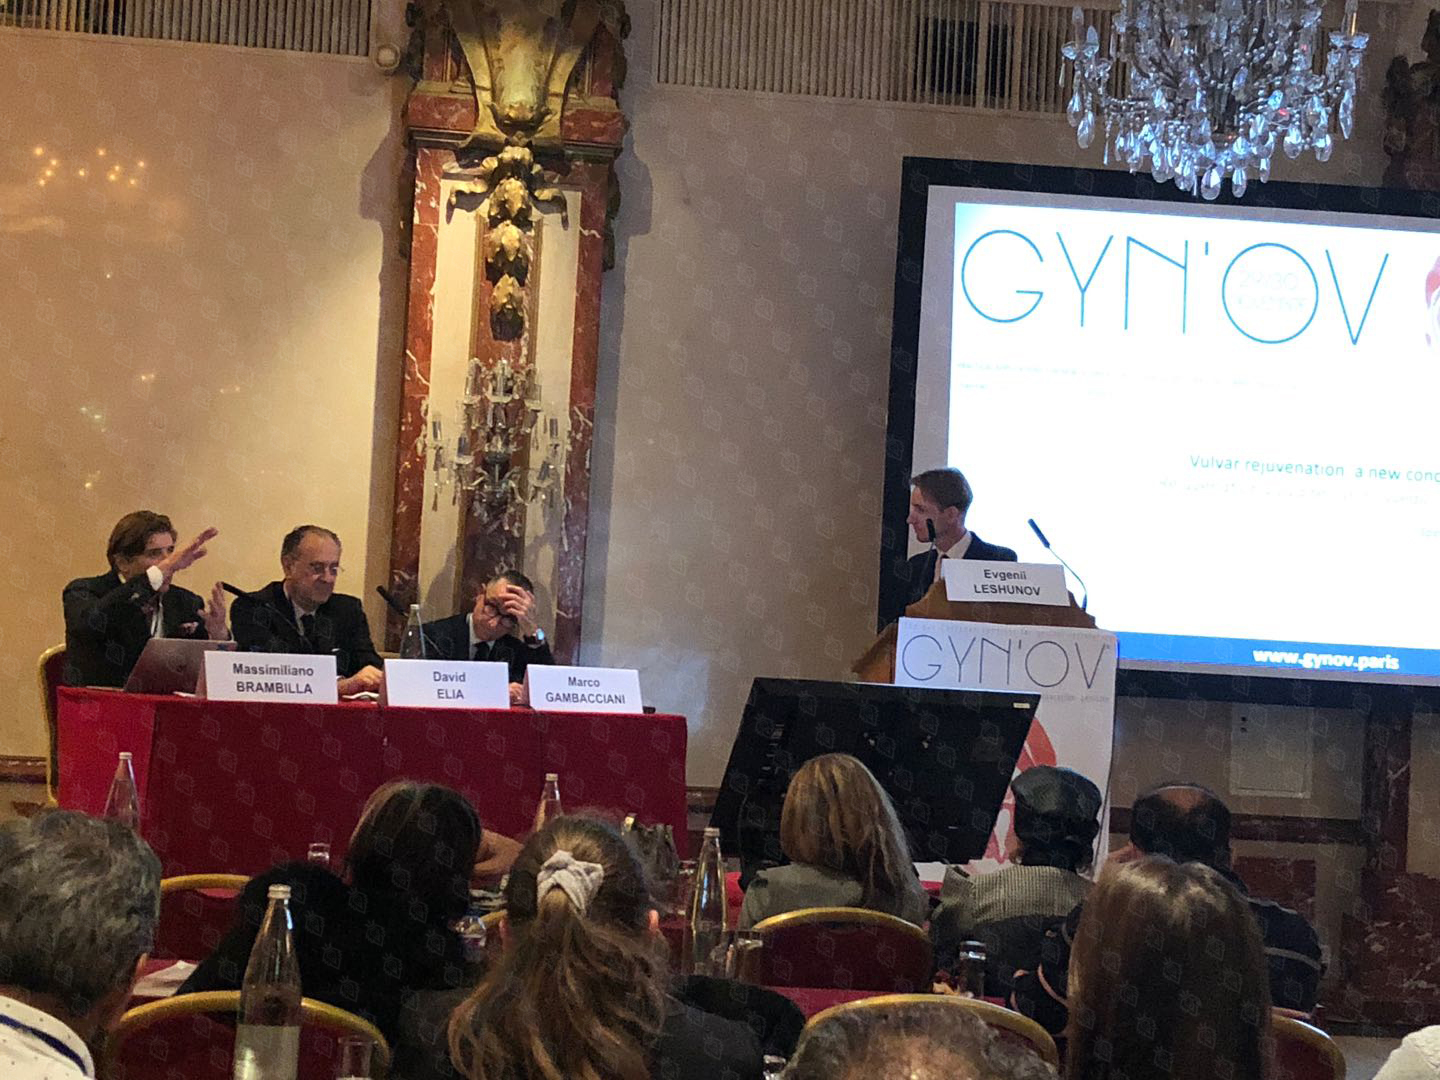 大卫·埃利亚医学博士组织举办欧洲首个生殖修复会议——巴黎GYN’OV大会